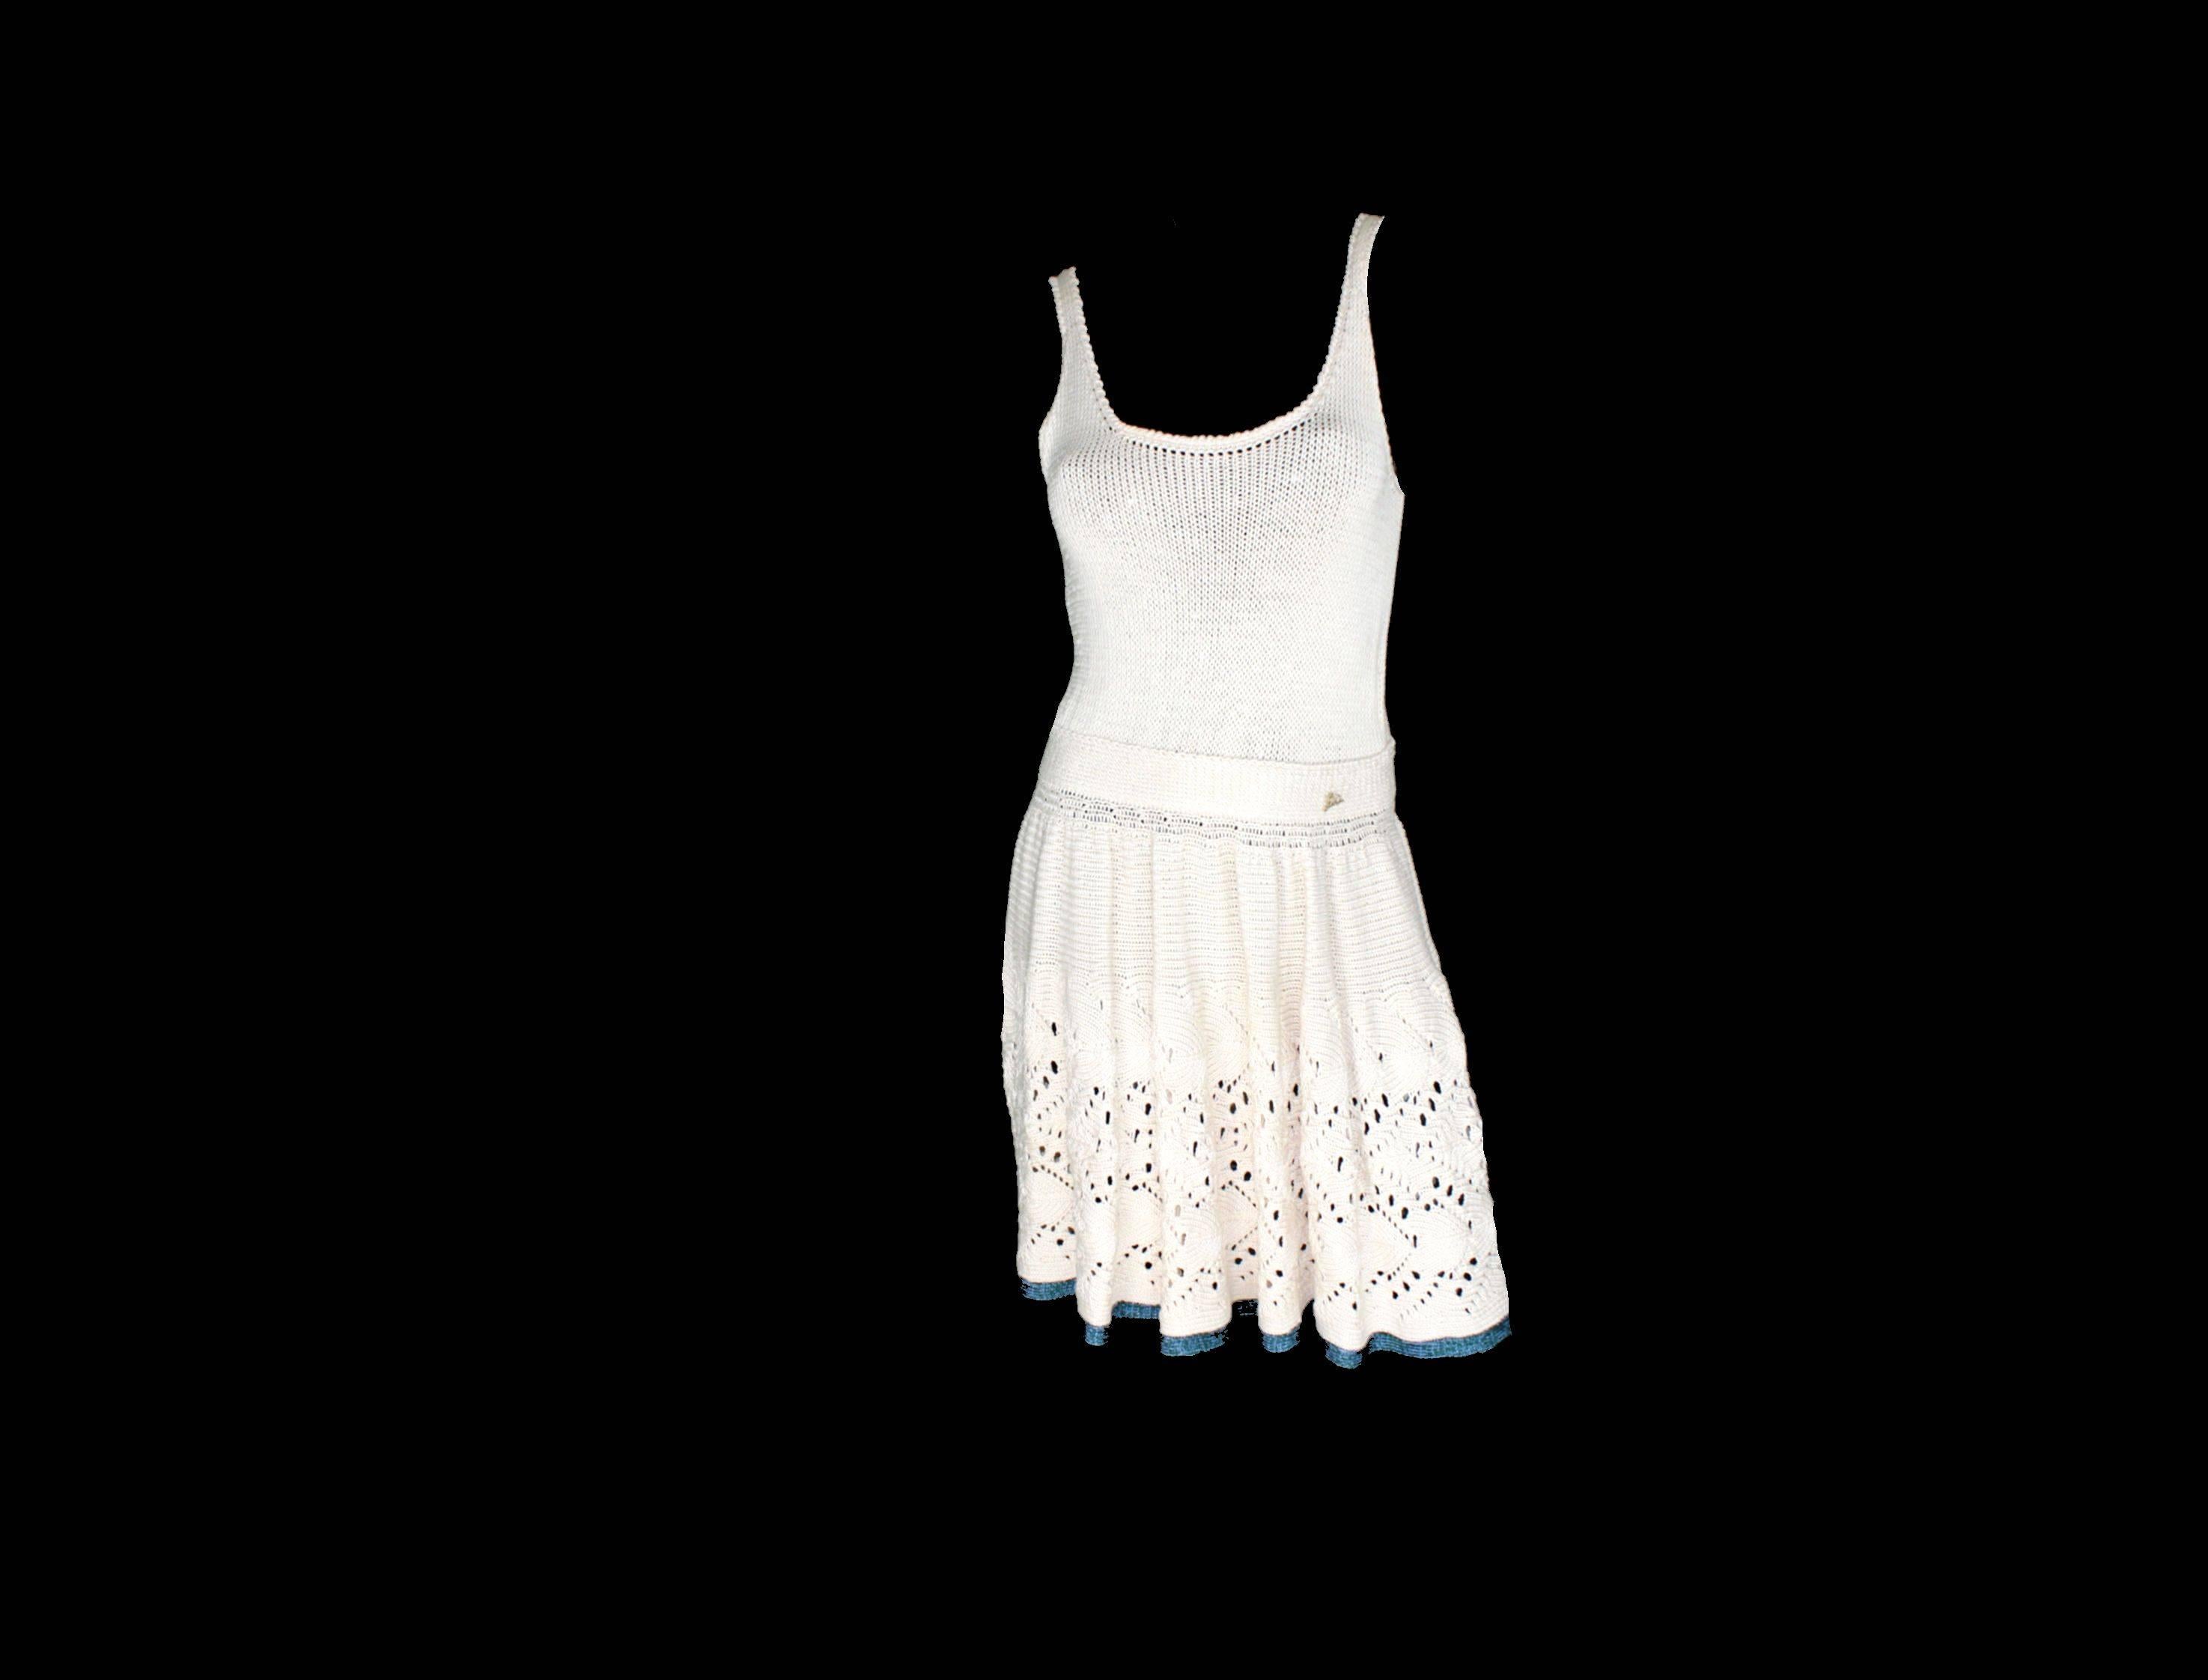 Une superbe robe en maille crochetée de CHANEL
Un classique intemporel 
Campaignée dans de nombreux éditoriaux, vue sur les podiums et dans la campagne ADS
Blanc cassé avec garniture couleur mer sur la couture
Plaque du logo Chanel à la